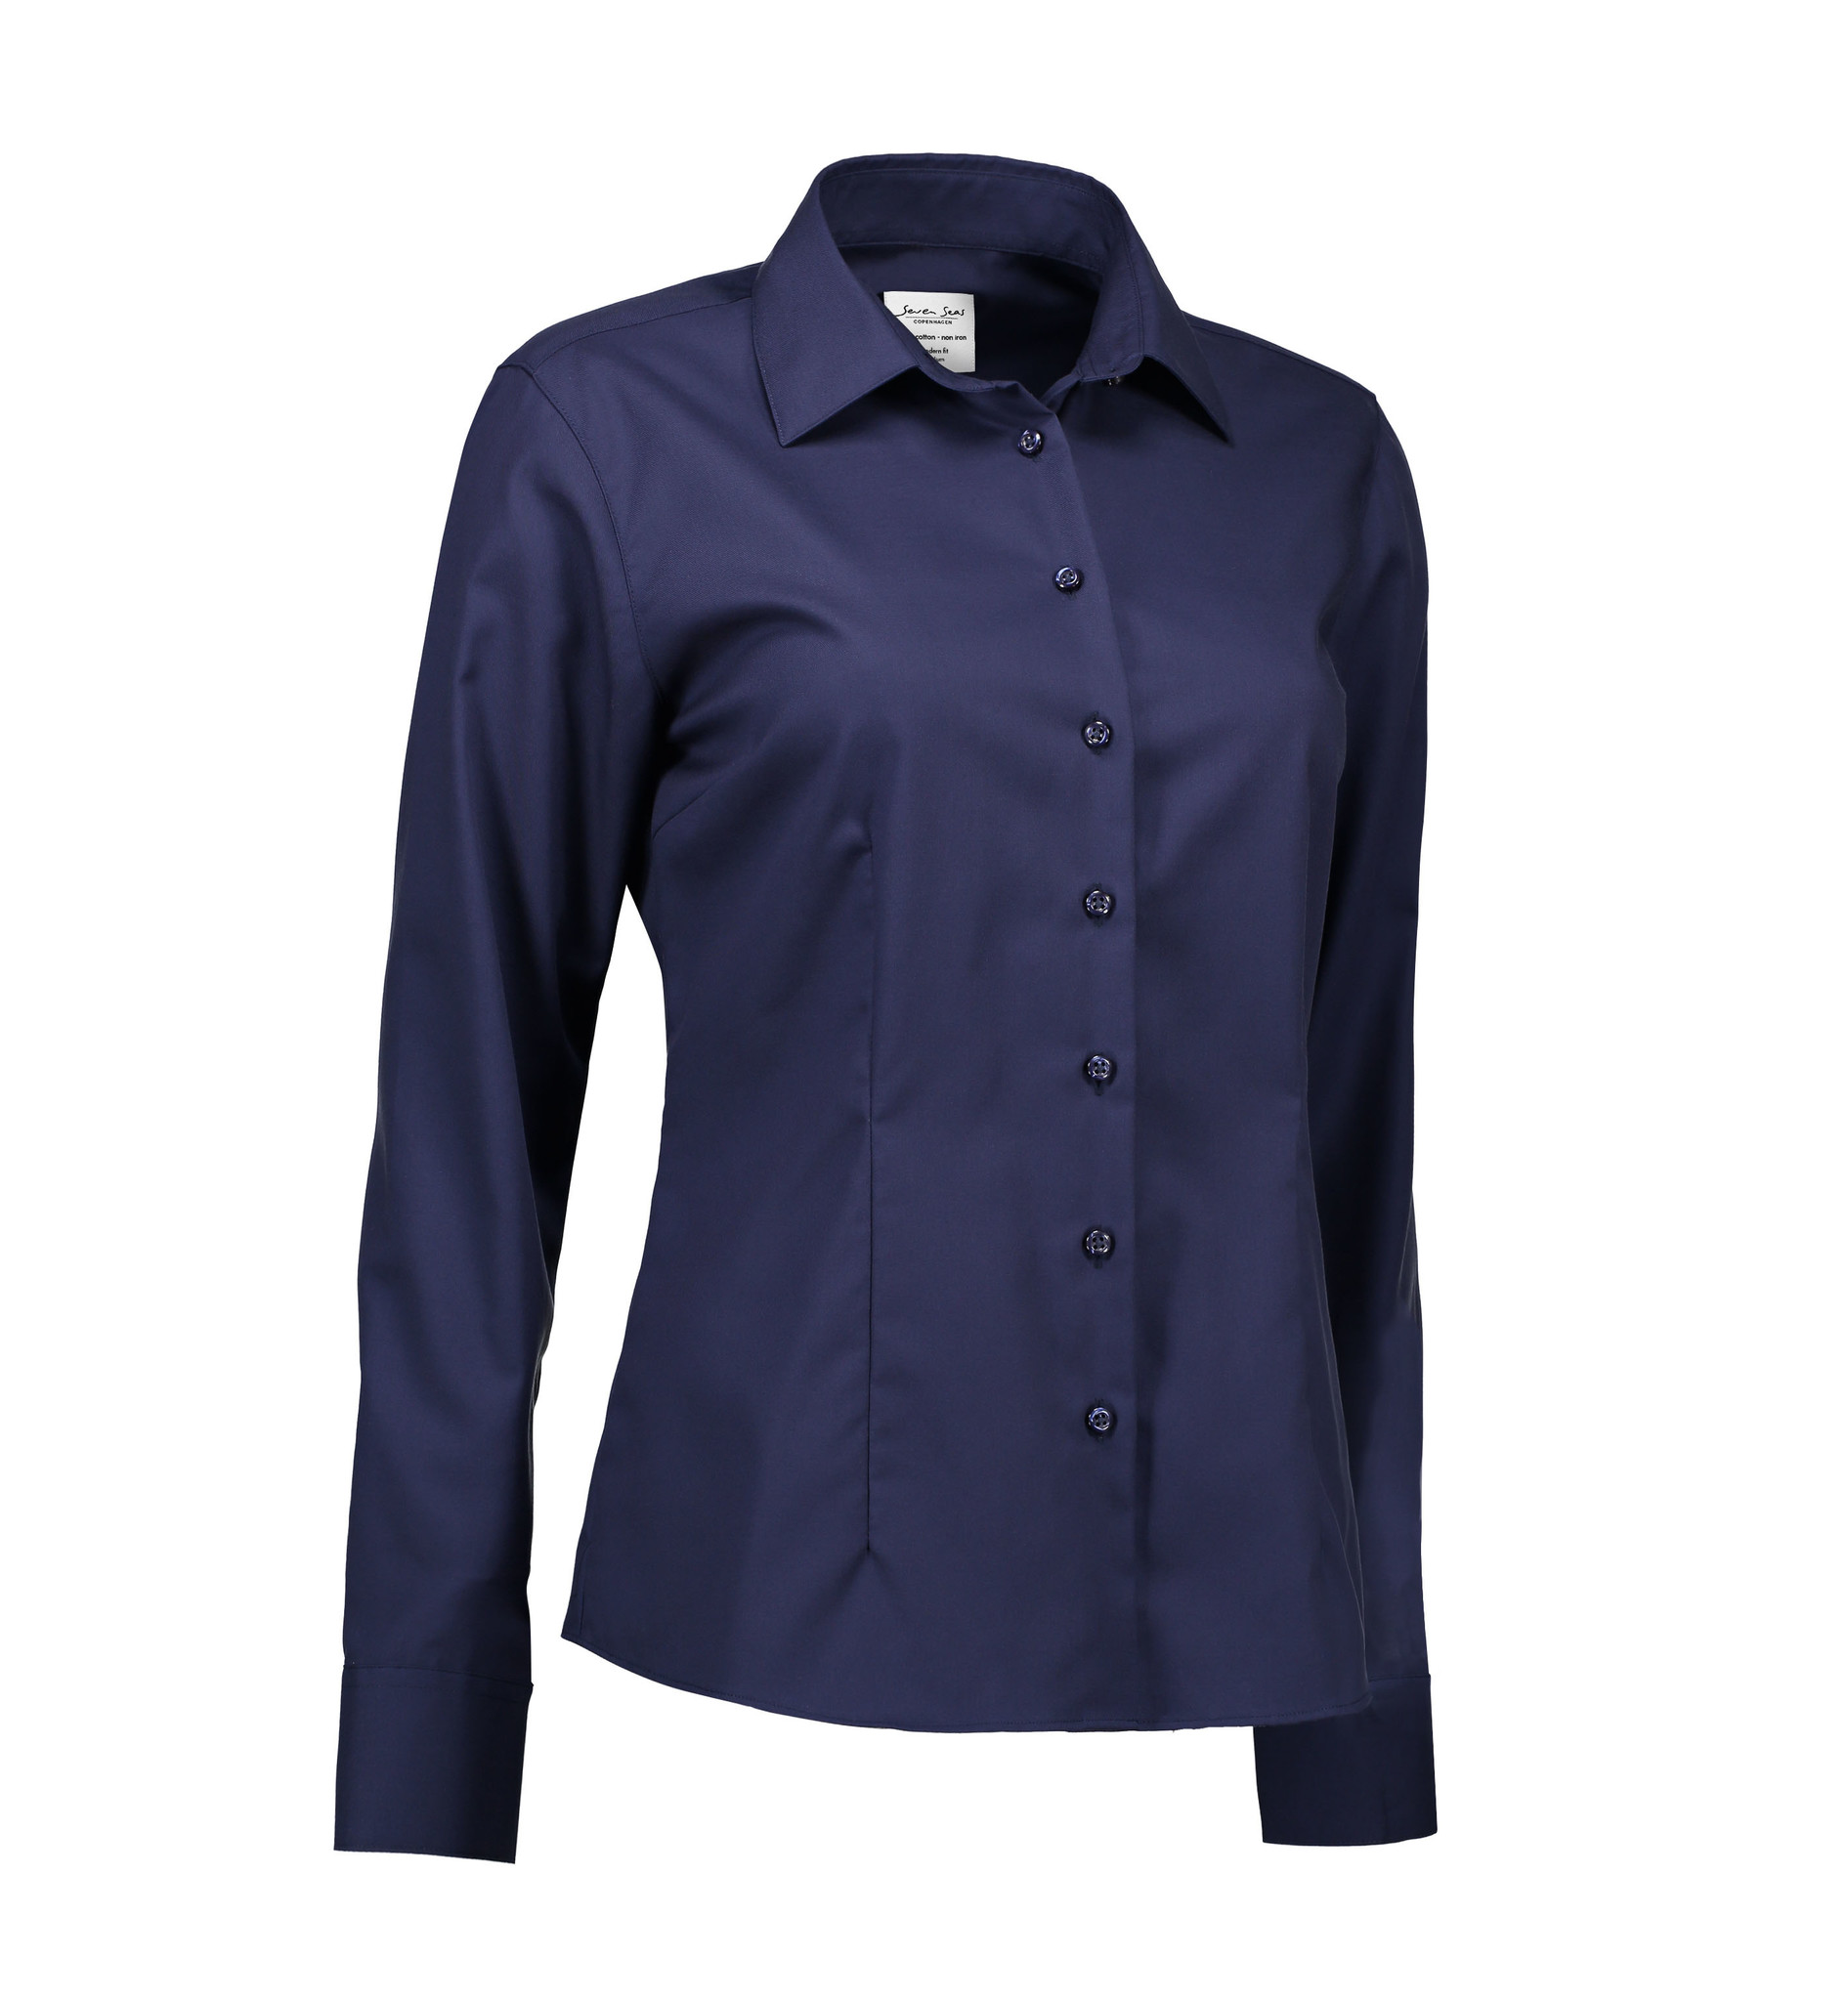 Zwijgend muis Verdragen Bedrijfskleding Non Iron overhemd in 5 kleuren - Bontenue Bedrijfskleding